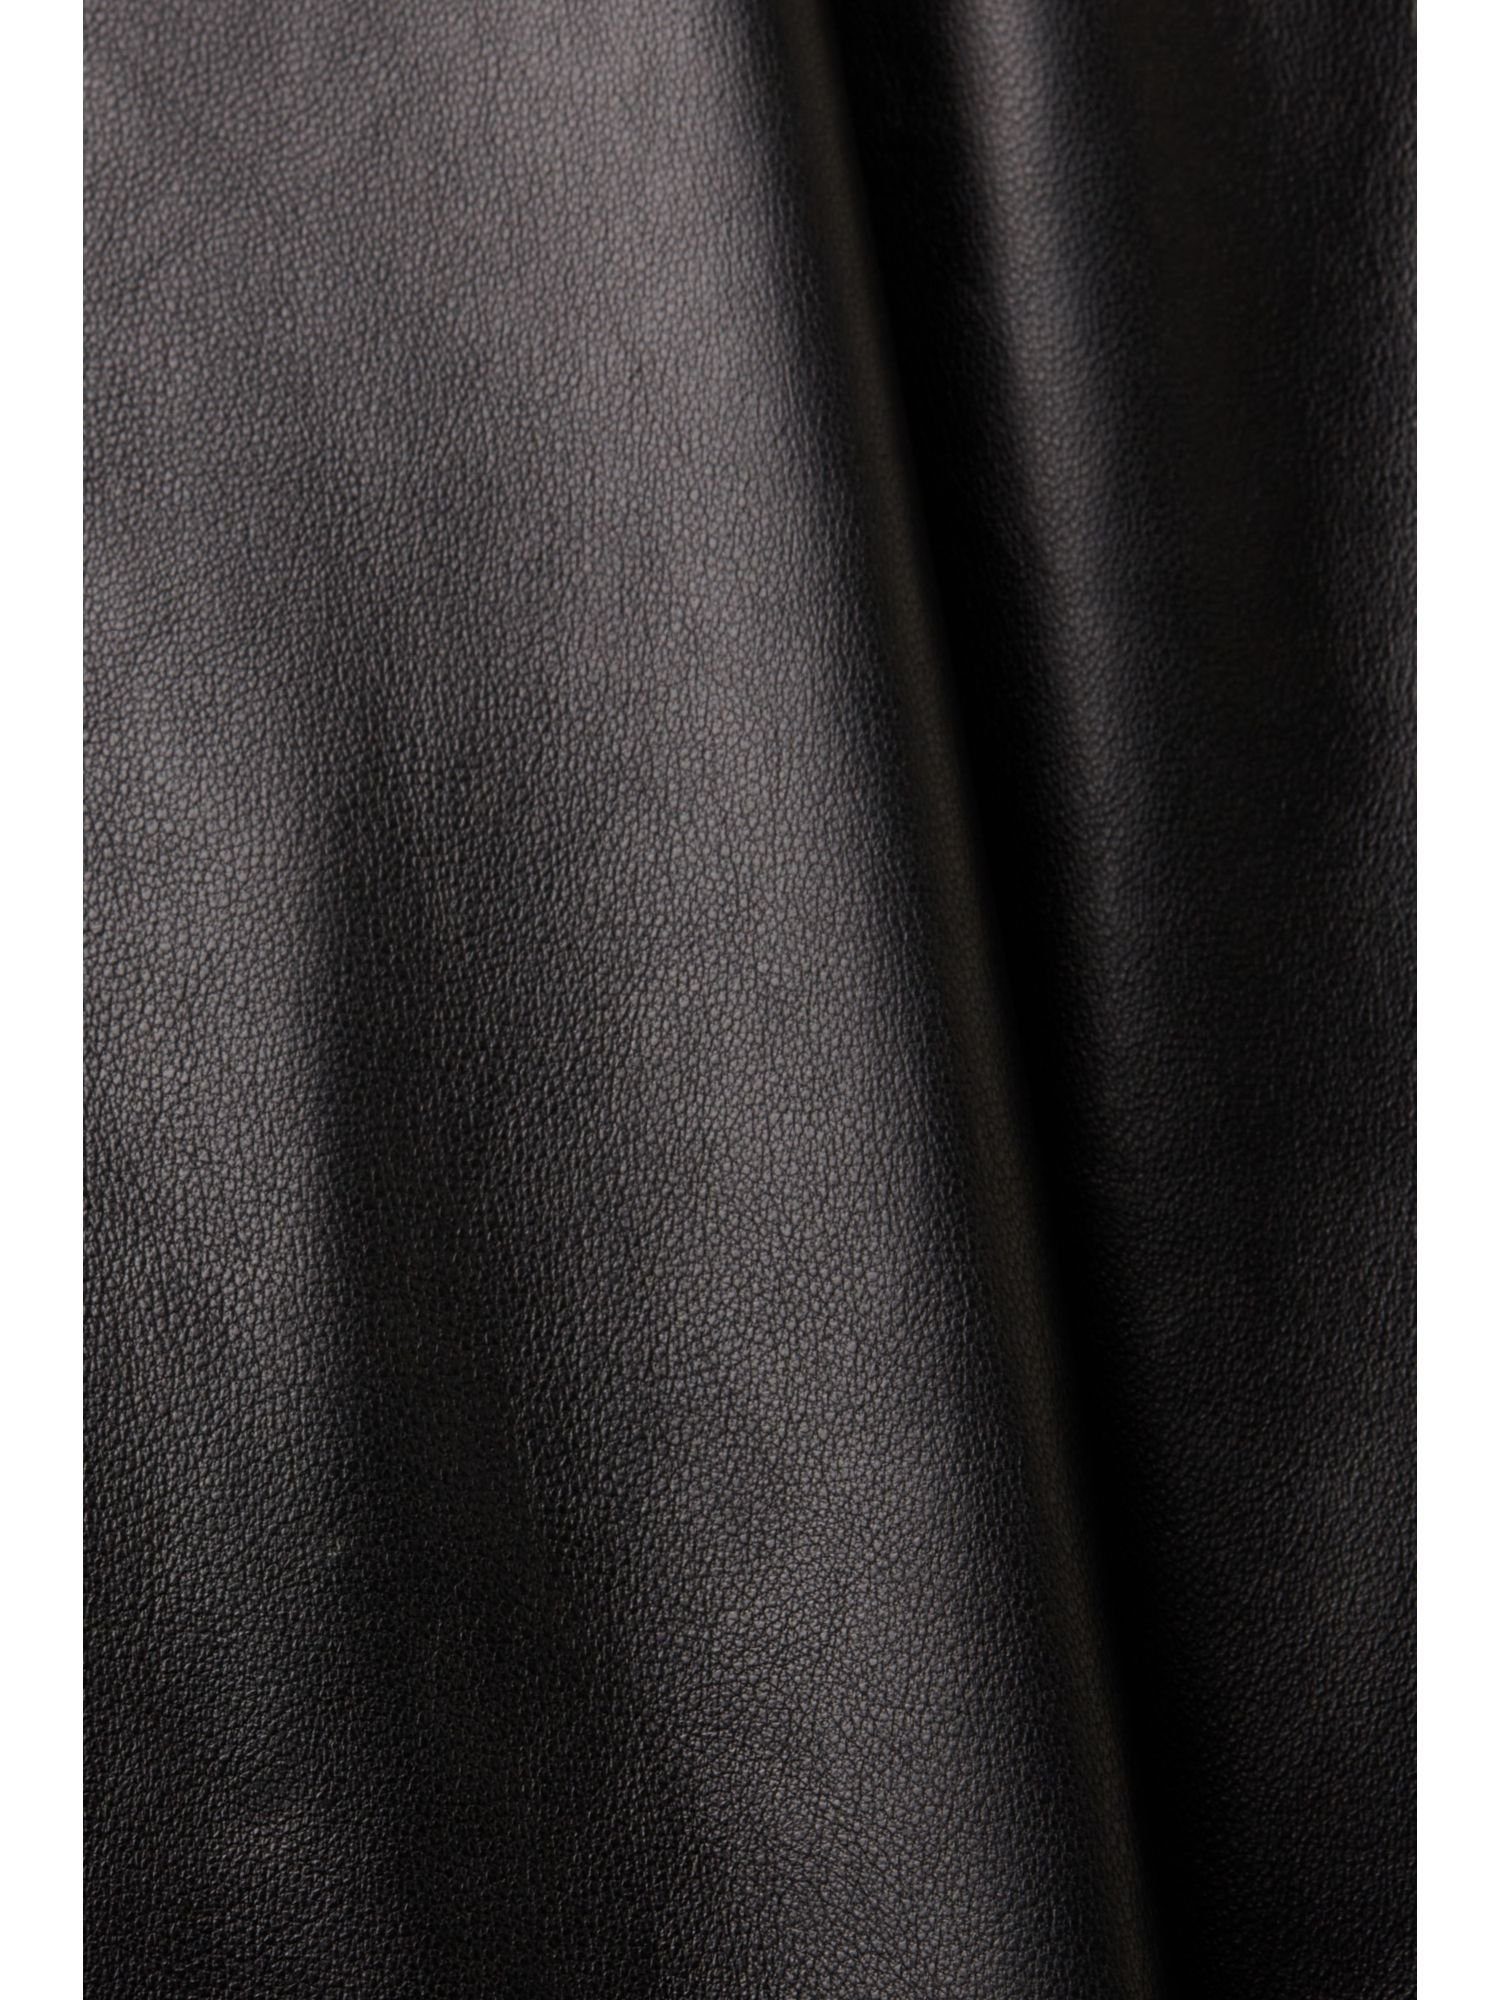 Leder Esprit Multifunktionaler Ledermantel BLACK aus Parka